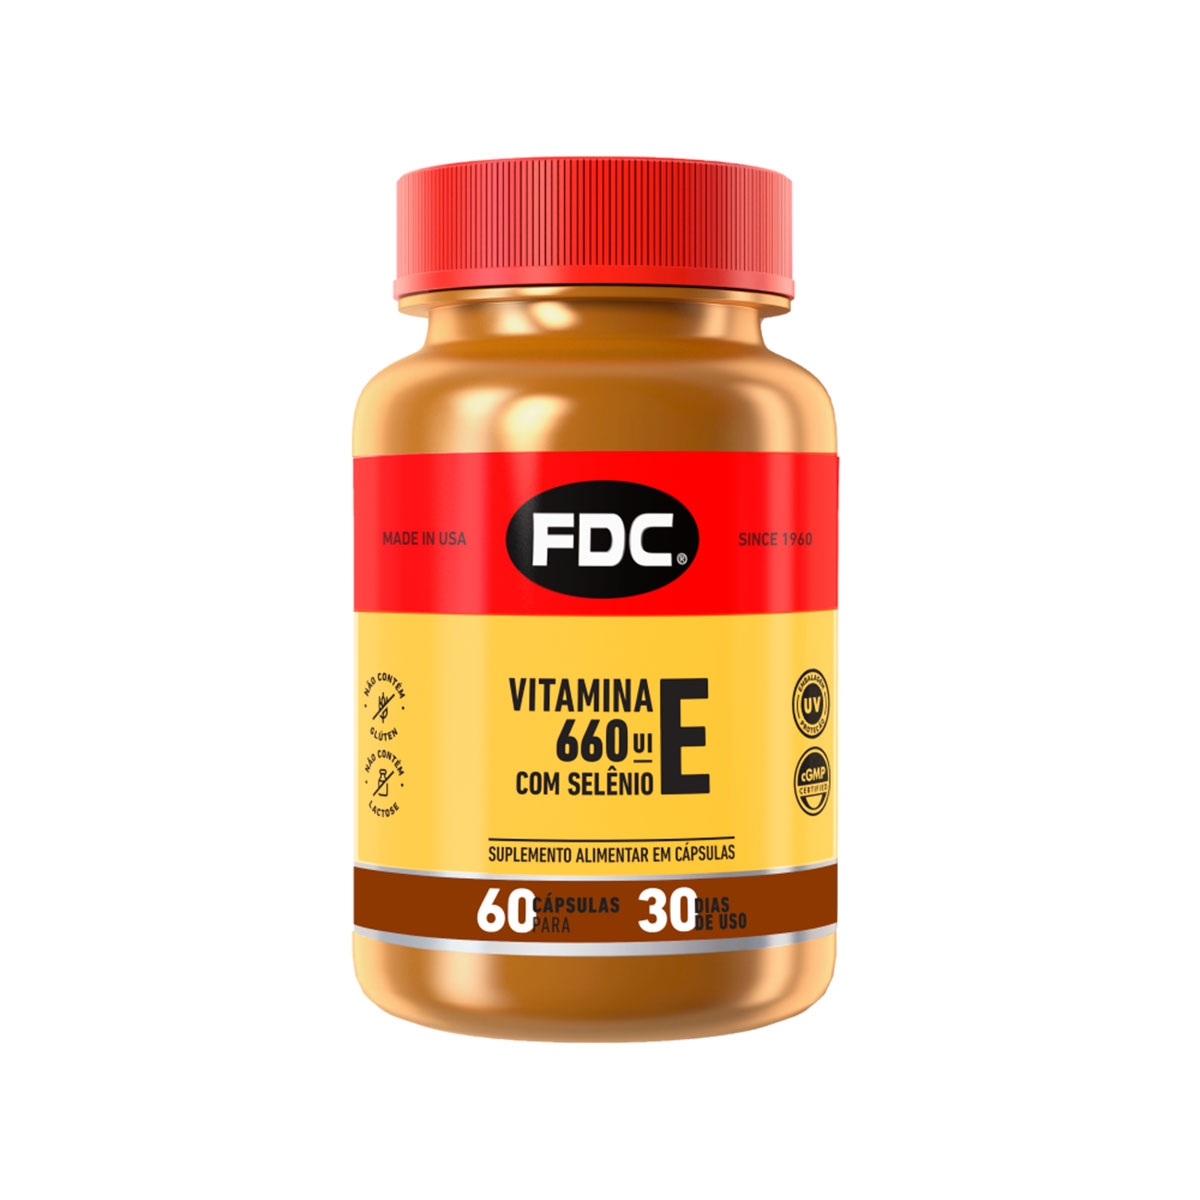 Vitamina E 660UI + Selênio 100mg FDC com 60 Cápsulas